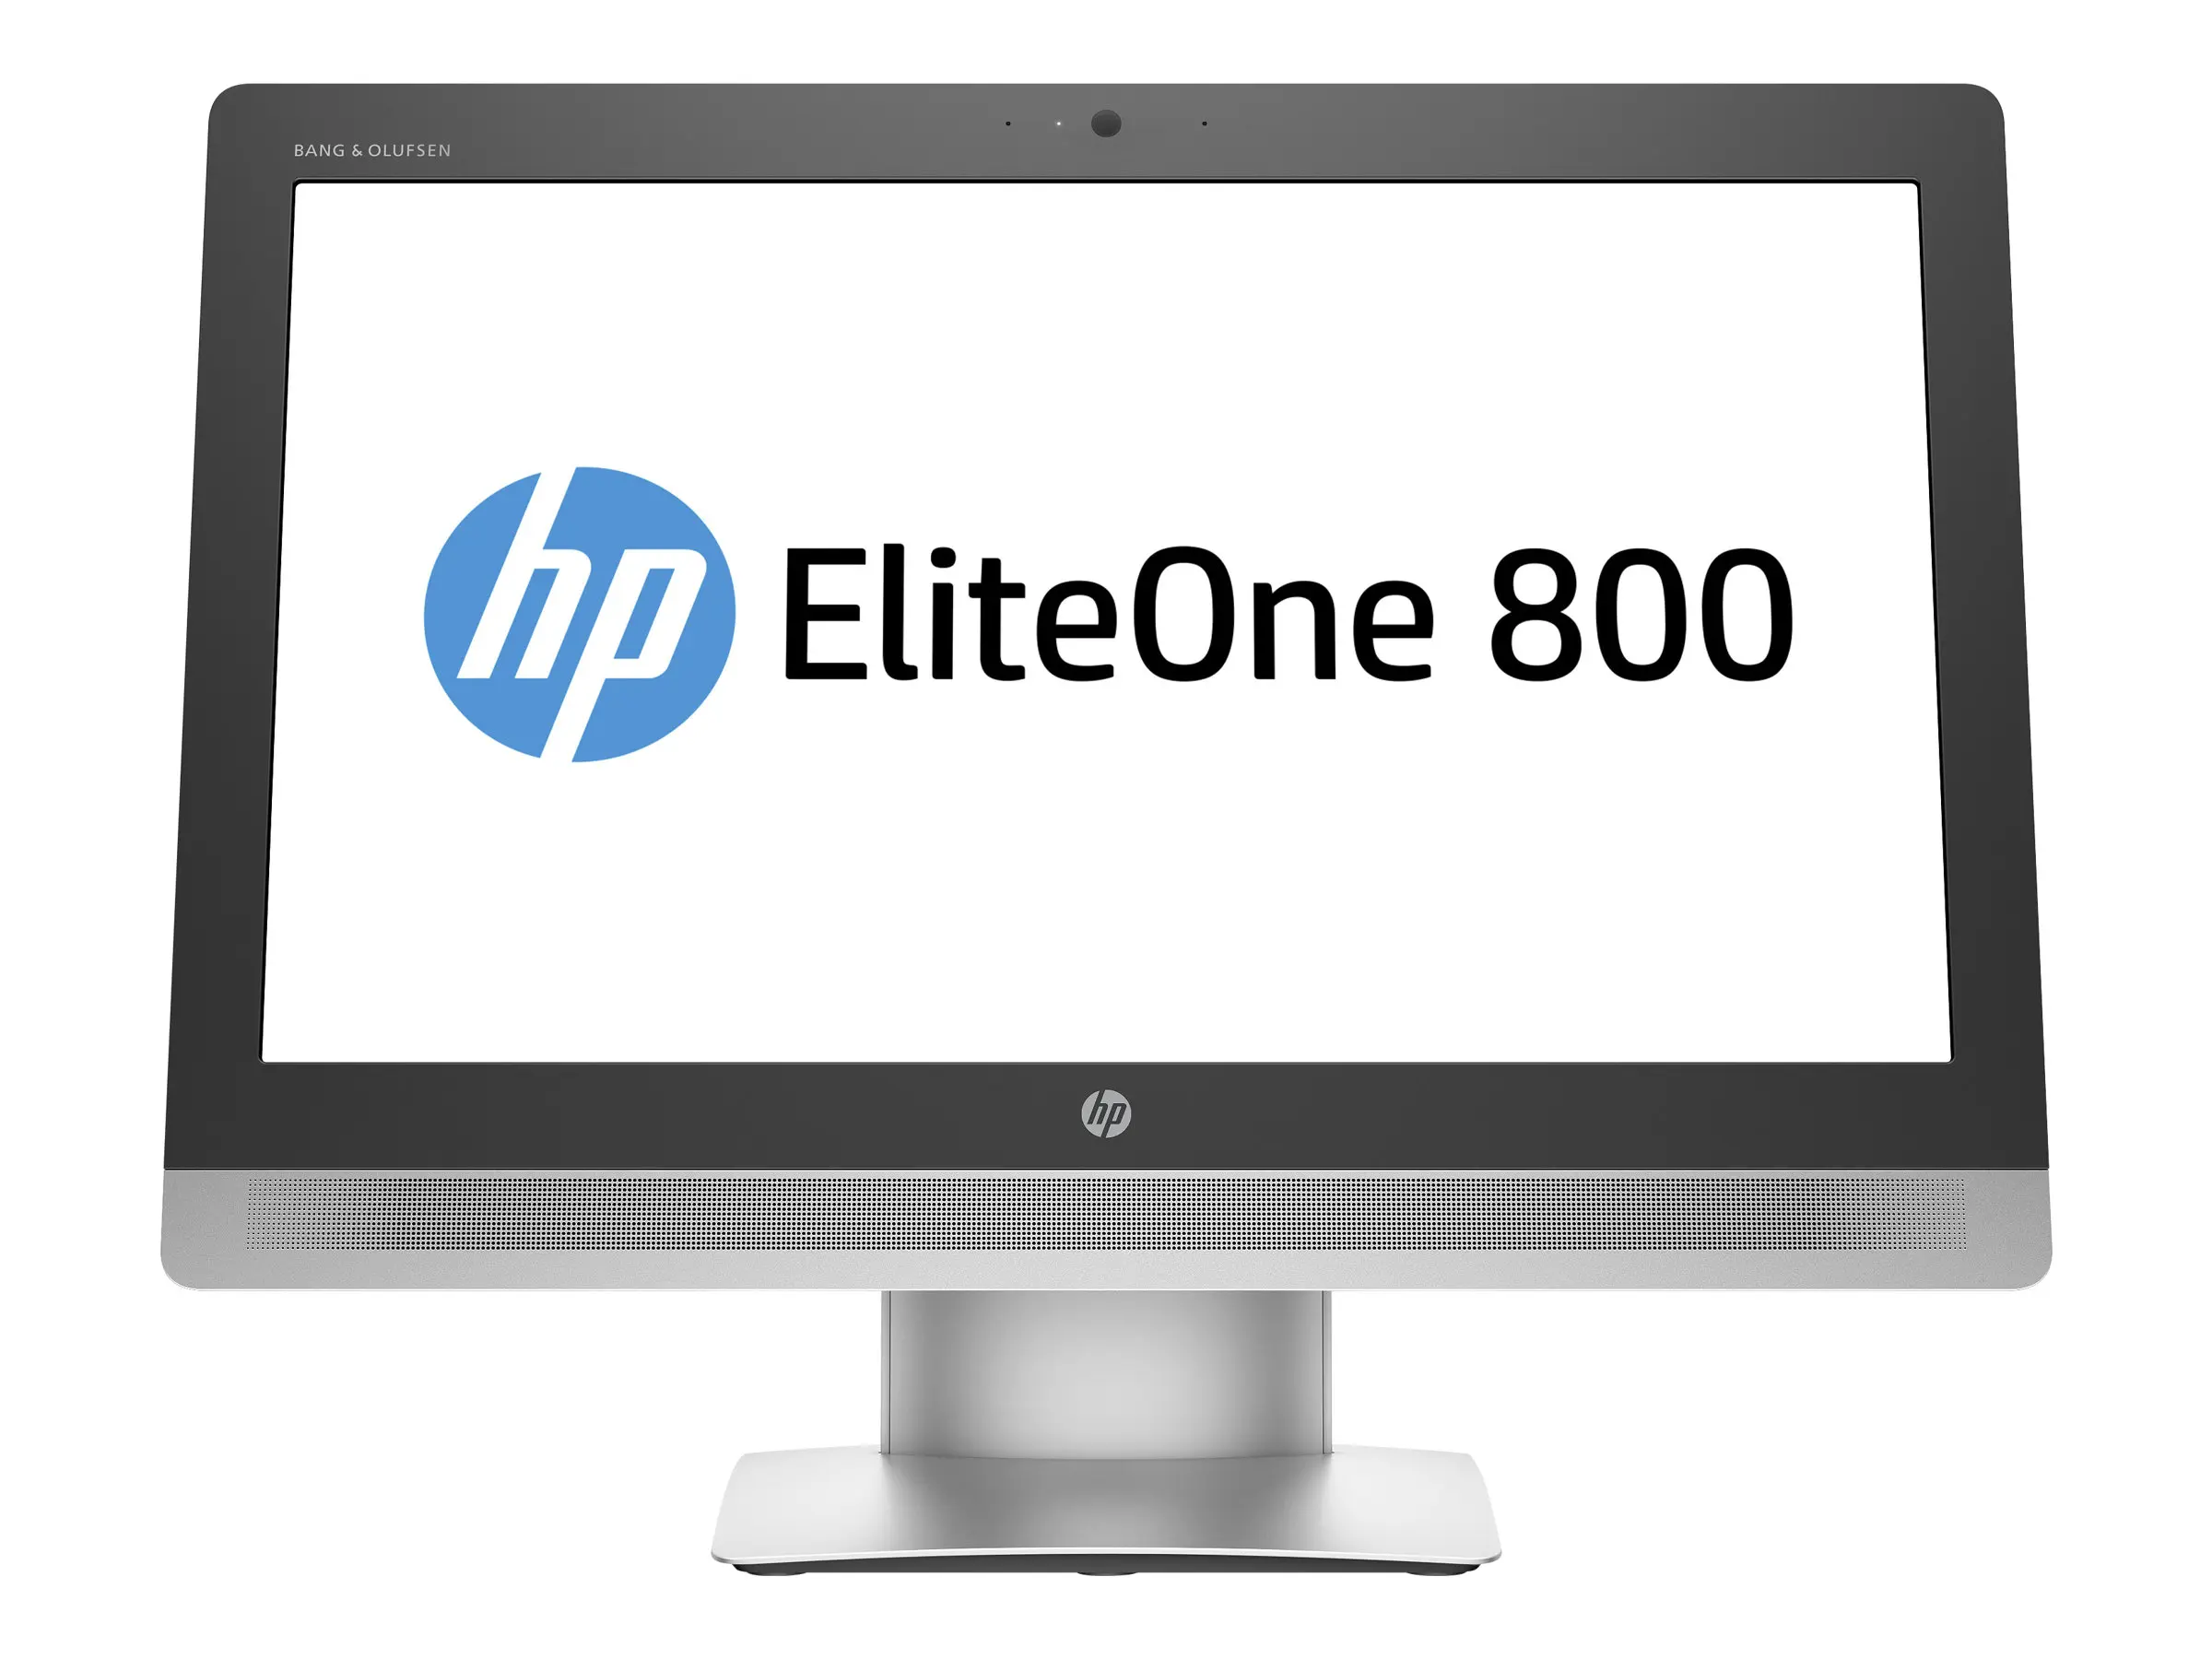 computer hewlett packard elite one 800 - How do I turn on my HP EliteOne 800